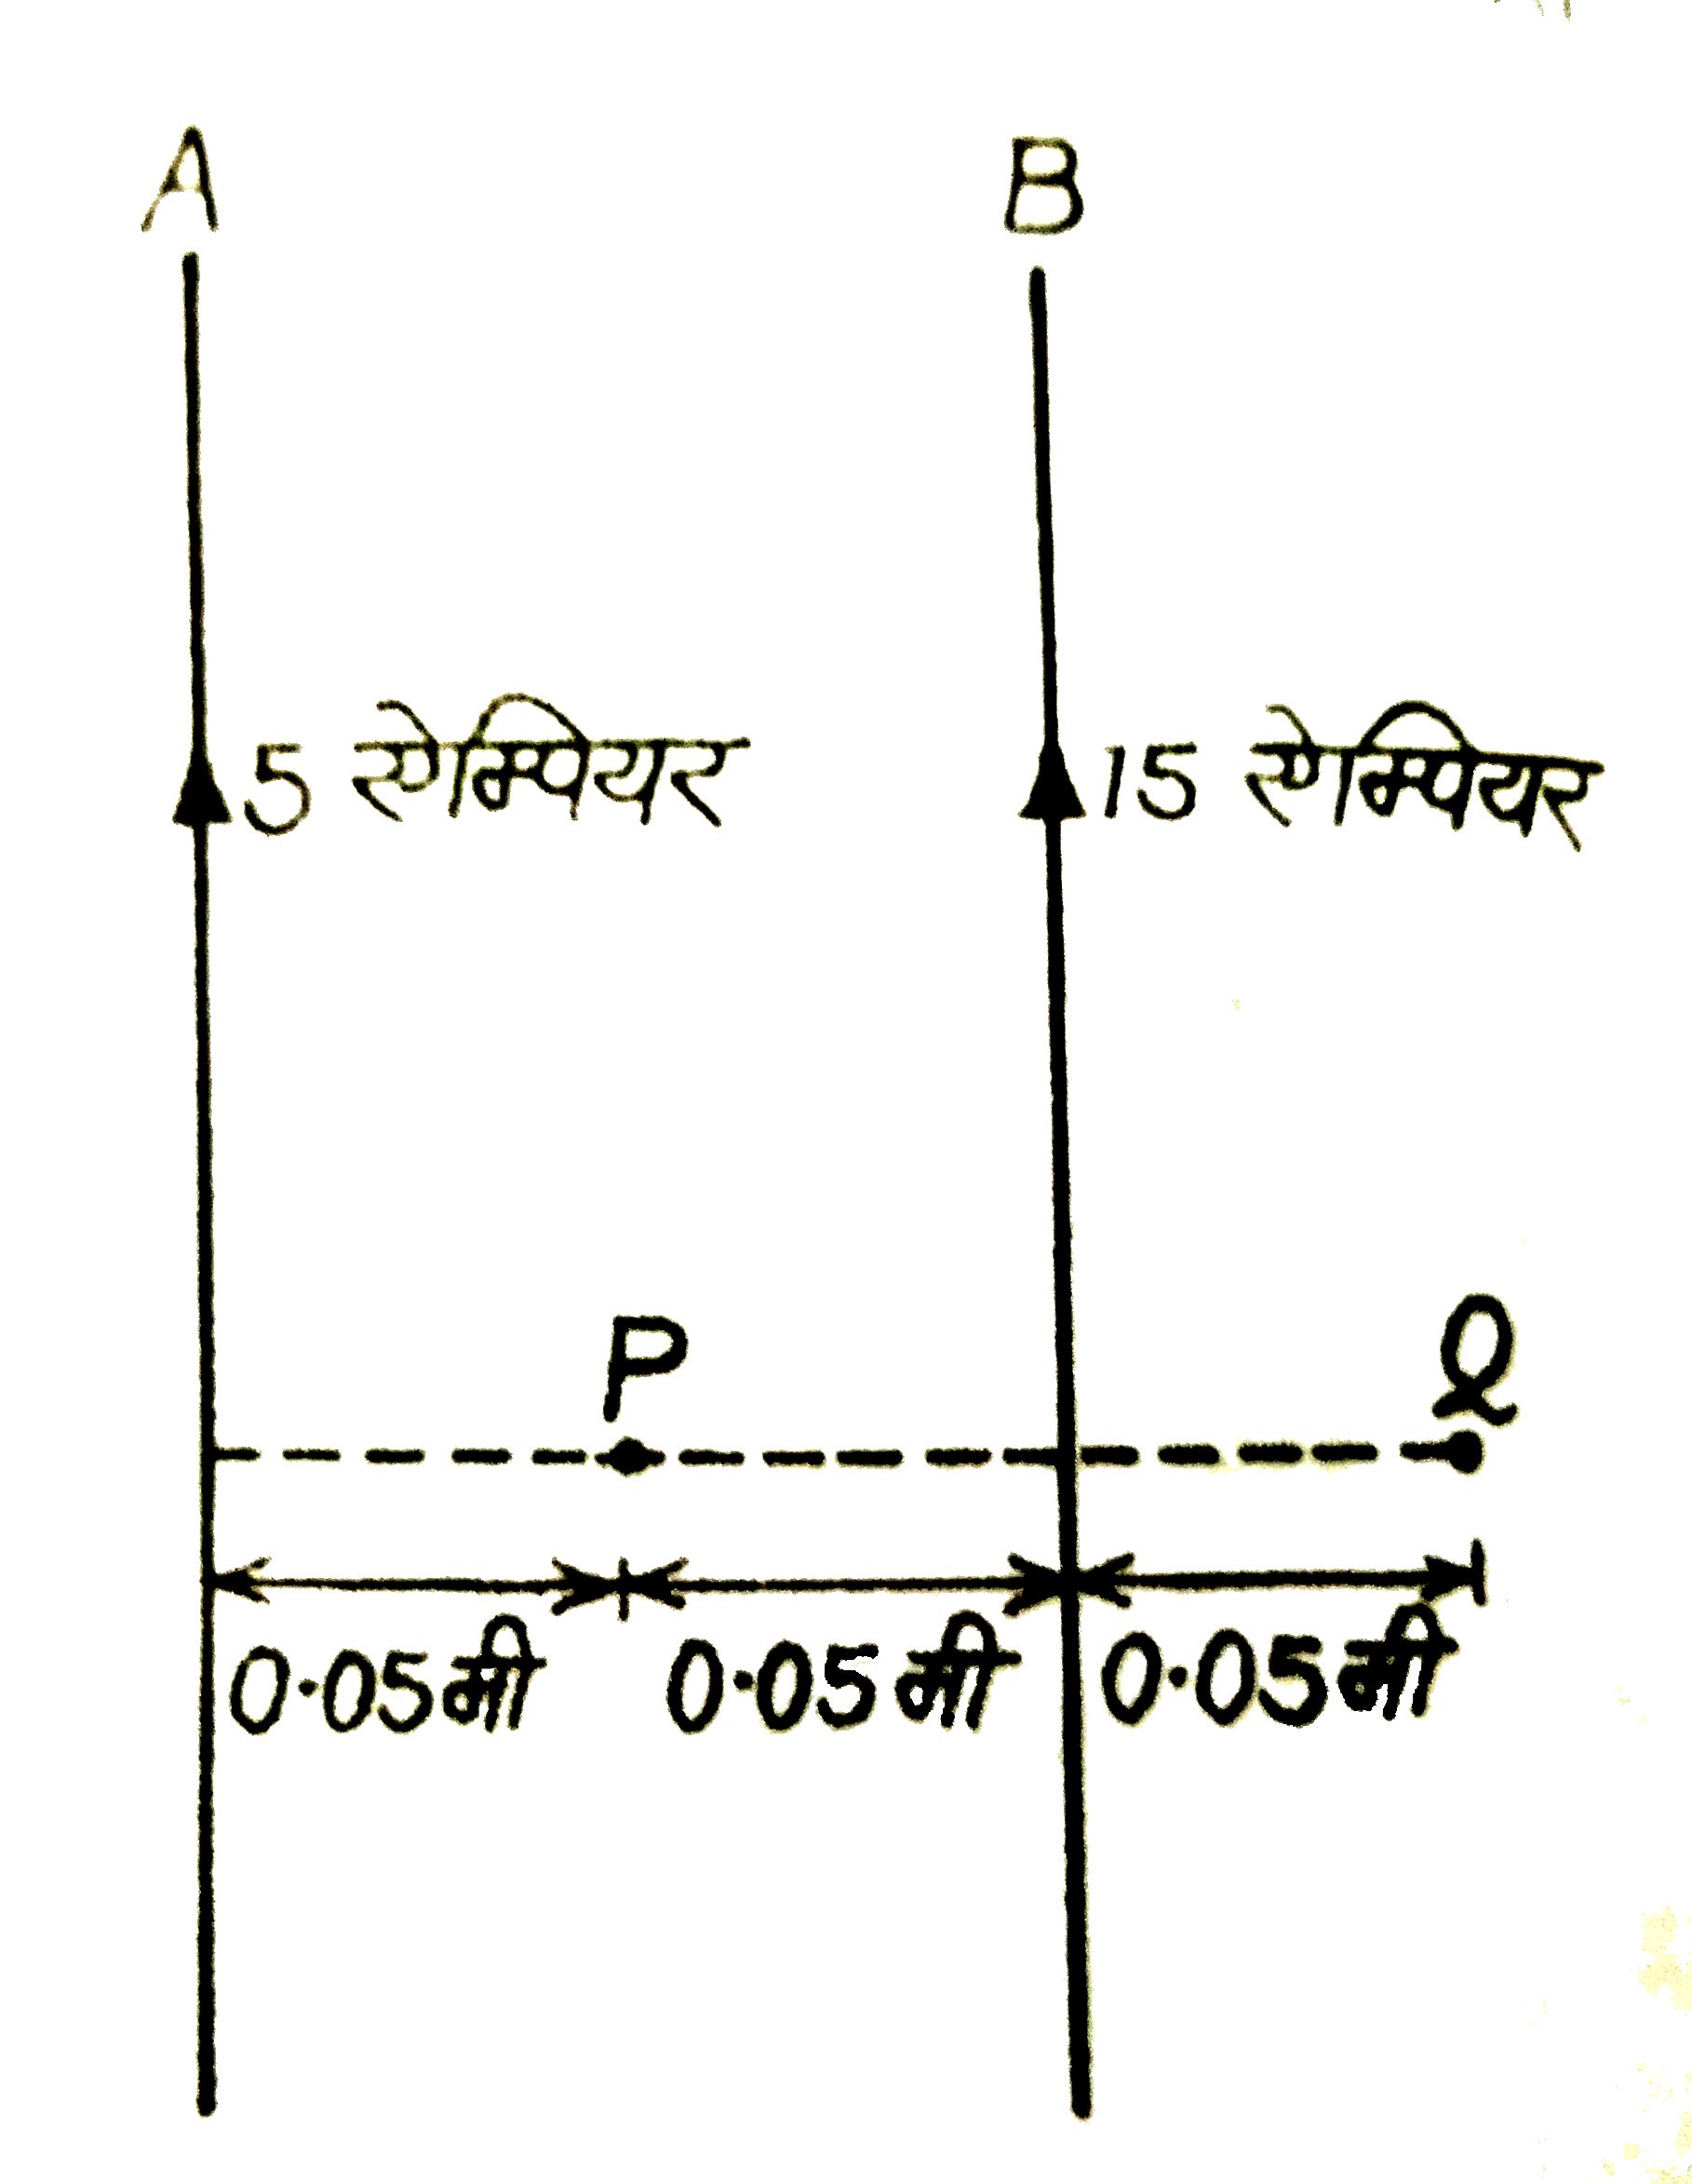 संग्लन चित्र में दो बहुत बड़े और सीधे समान्तर तारों A व B के बीच के दुरी 0.10 मीटर है A में 5 ऐम्पियर की तथा बी में 15 ऐम्पियर की धारा प्रवाहित हो रही है। (i) बिंदुओं P तथा Q पर चुंबकीय क्षेत्र के मान और दिशा की गणना कीजिए । (ii) तार A की प्रति मीटर लम्बाई वाले बल का परिमाण और दिशा ज्ञात कीजिए ।